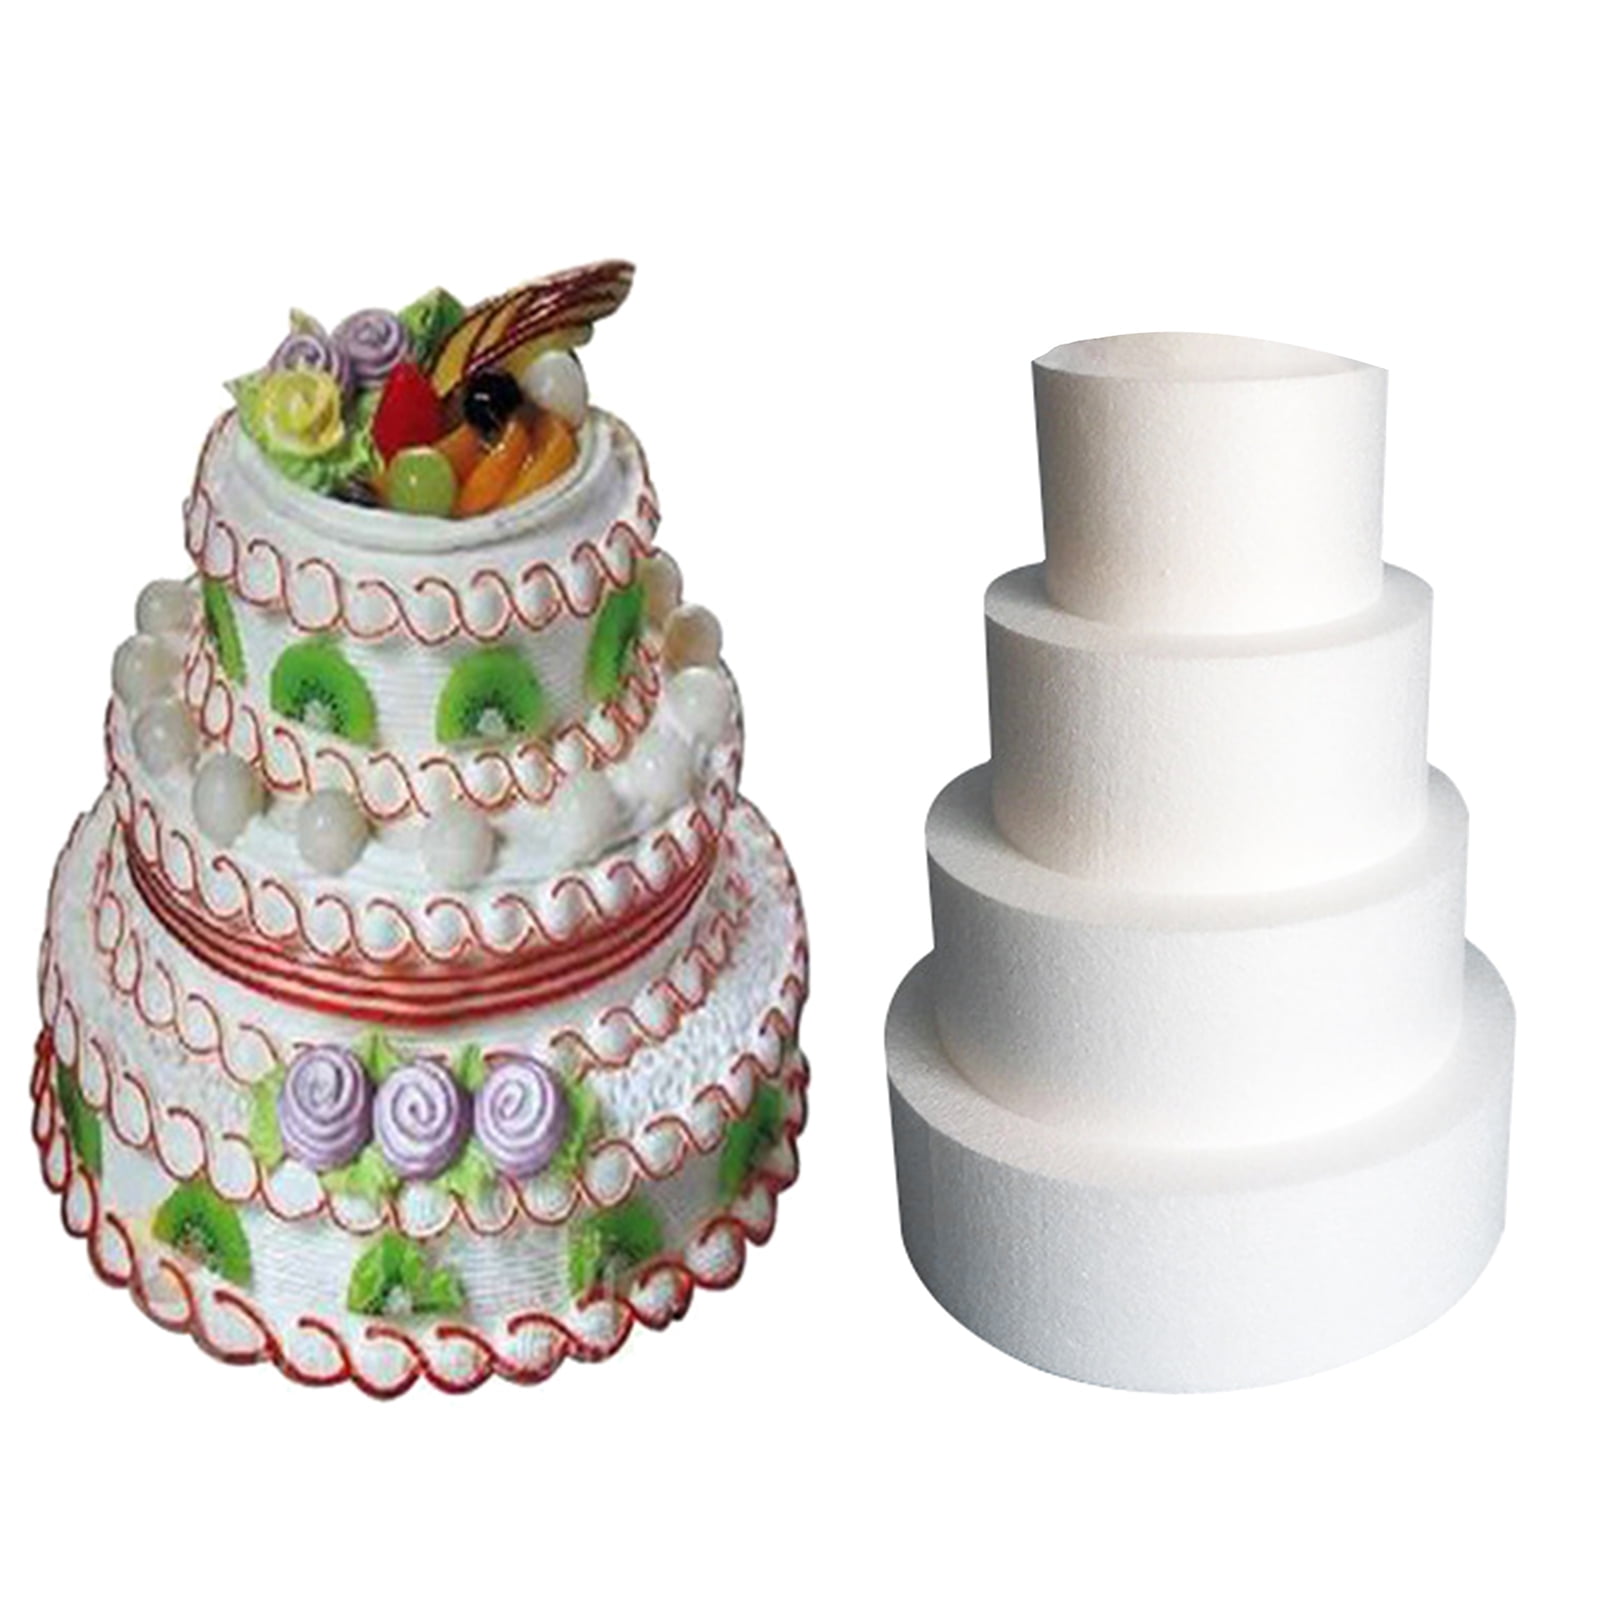 Round Polystyrene Styrofoam Foam Cake Dummy Wedding Party Decoration DIY Craft